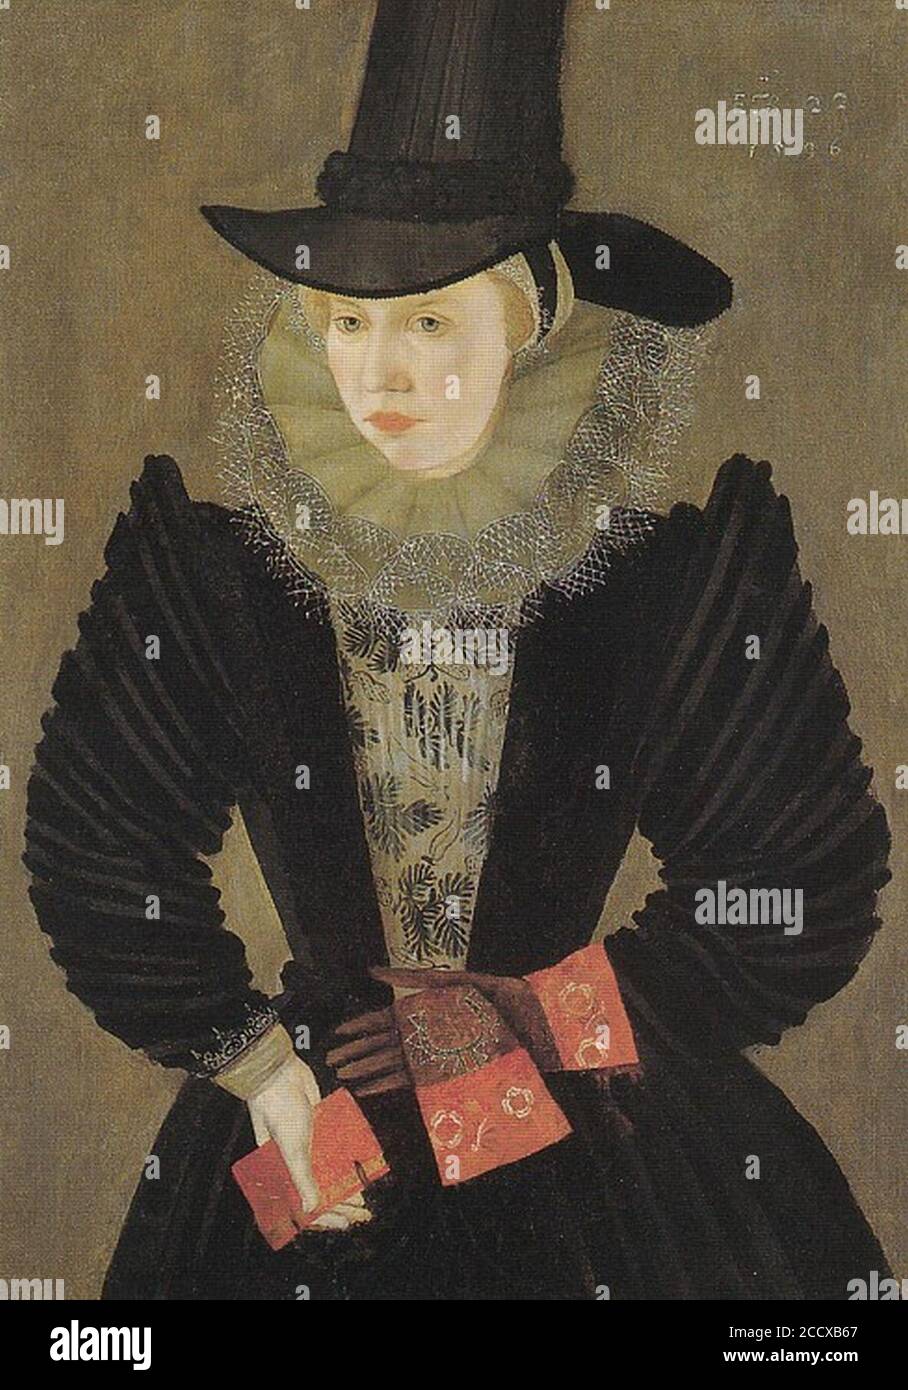 Joan Alleyn 1596. Stock Photo